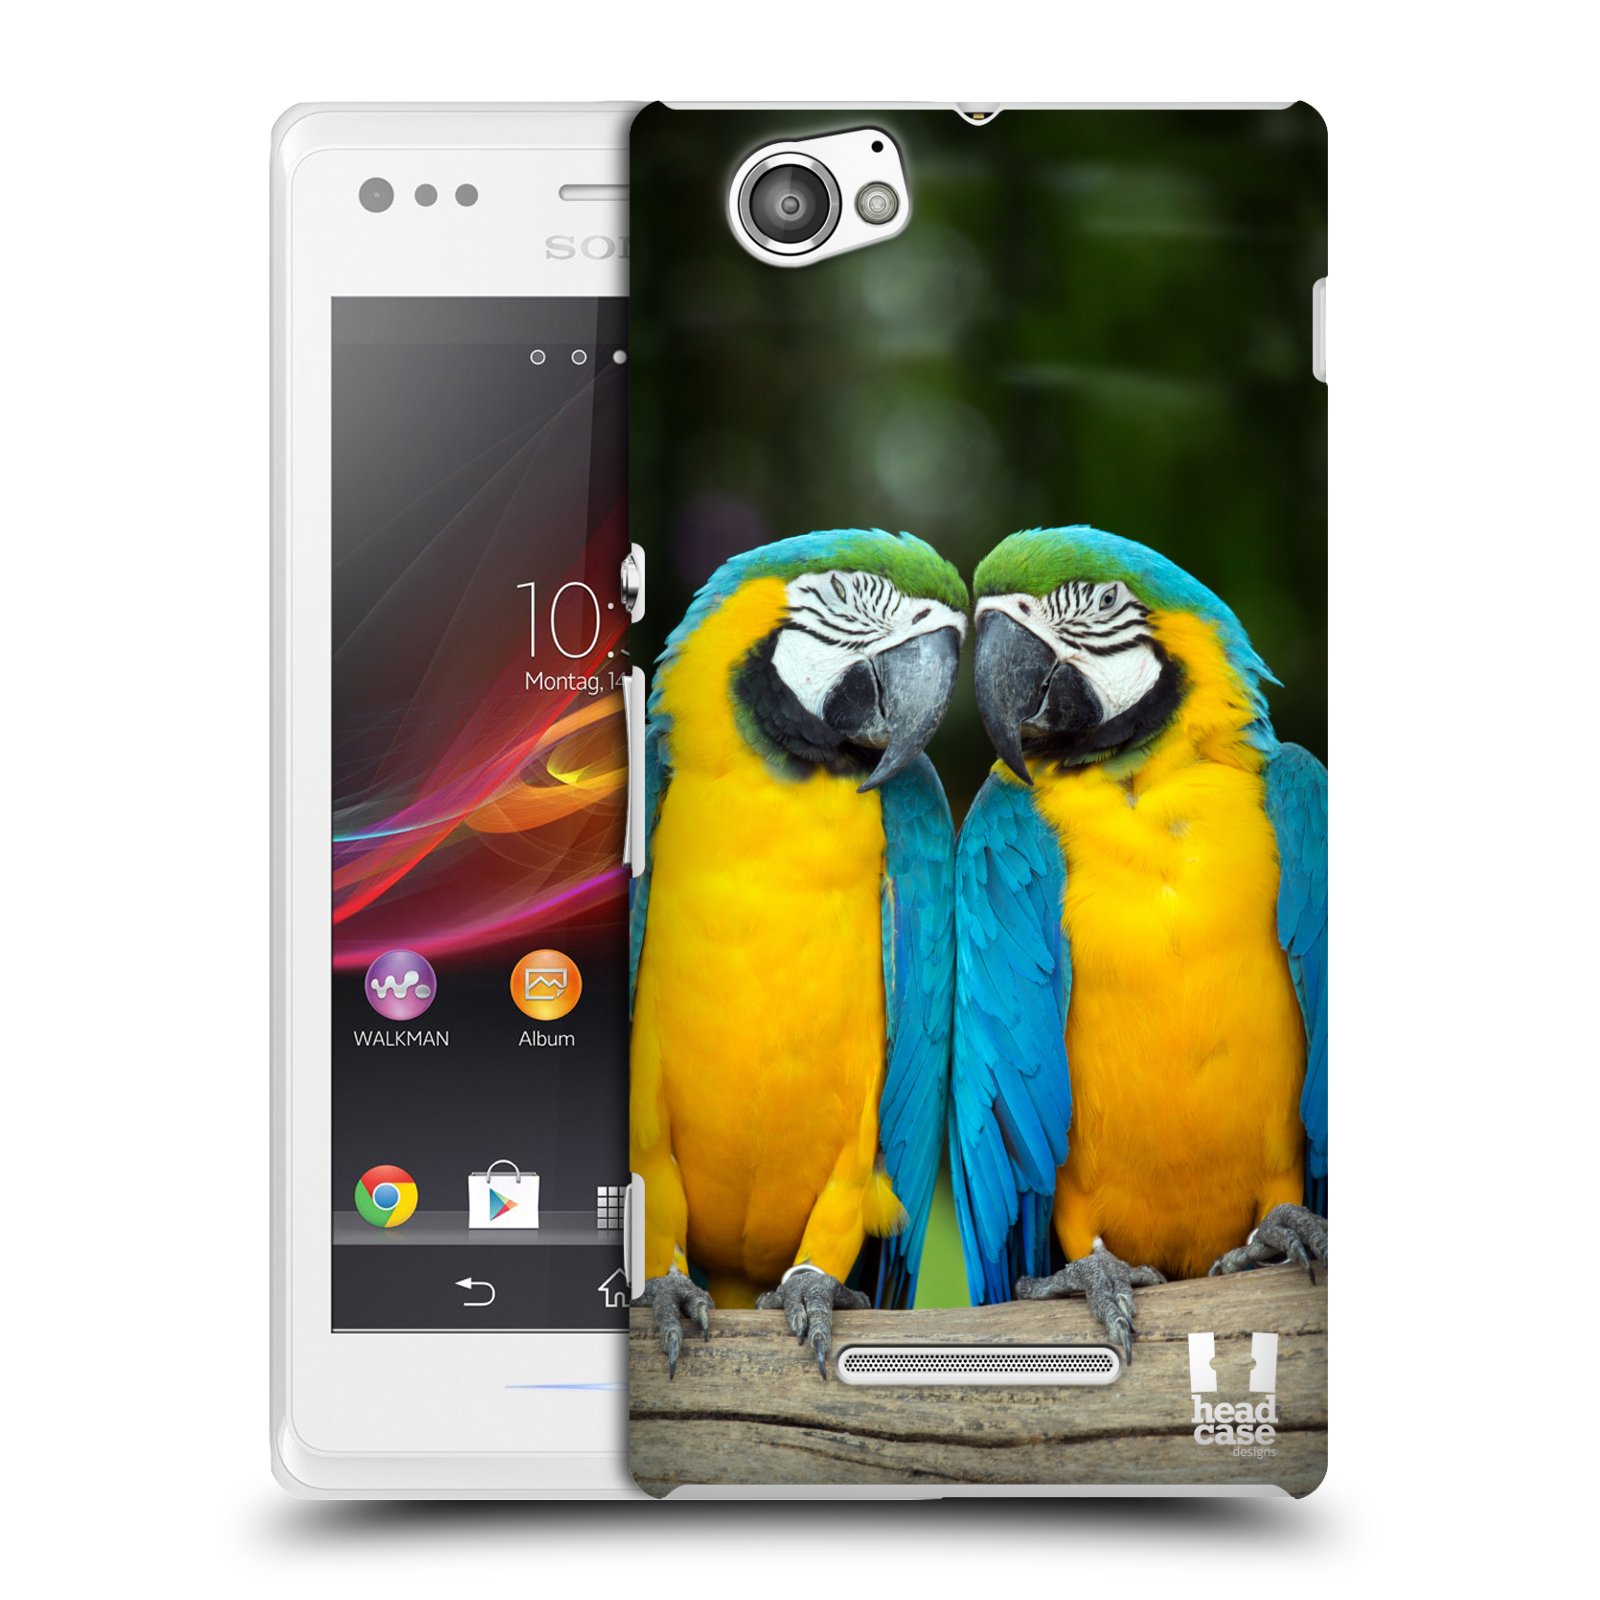 HEAD CASE plastový obal na mobil Sony Xperia M vzor slavná zvířata foto dva papoušci